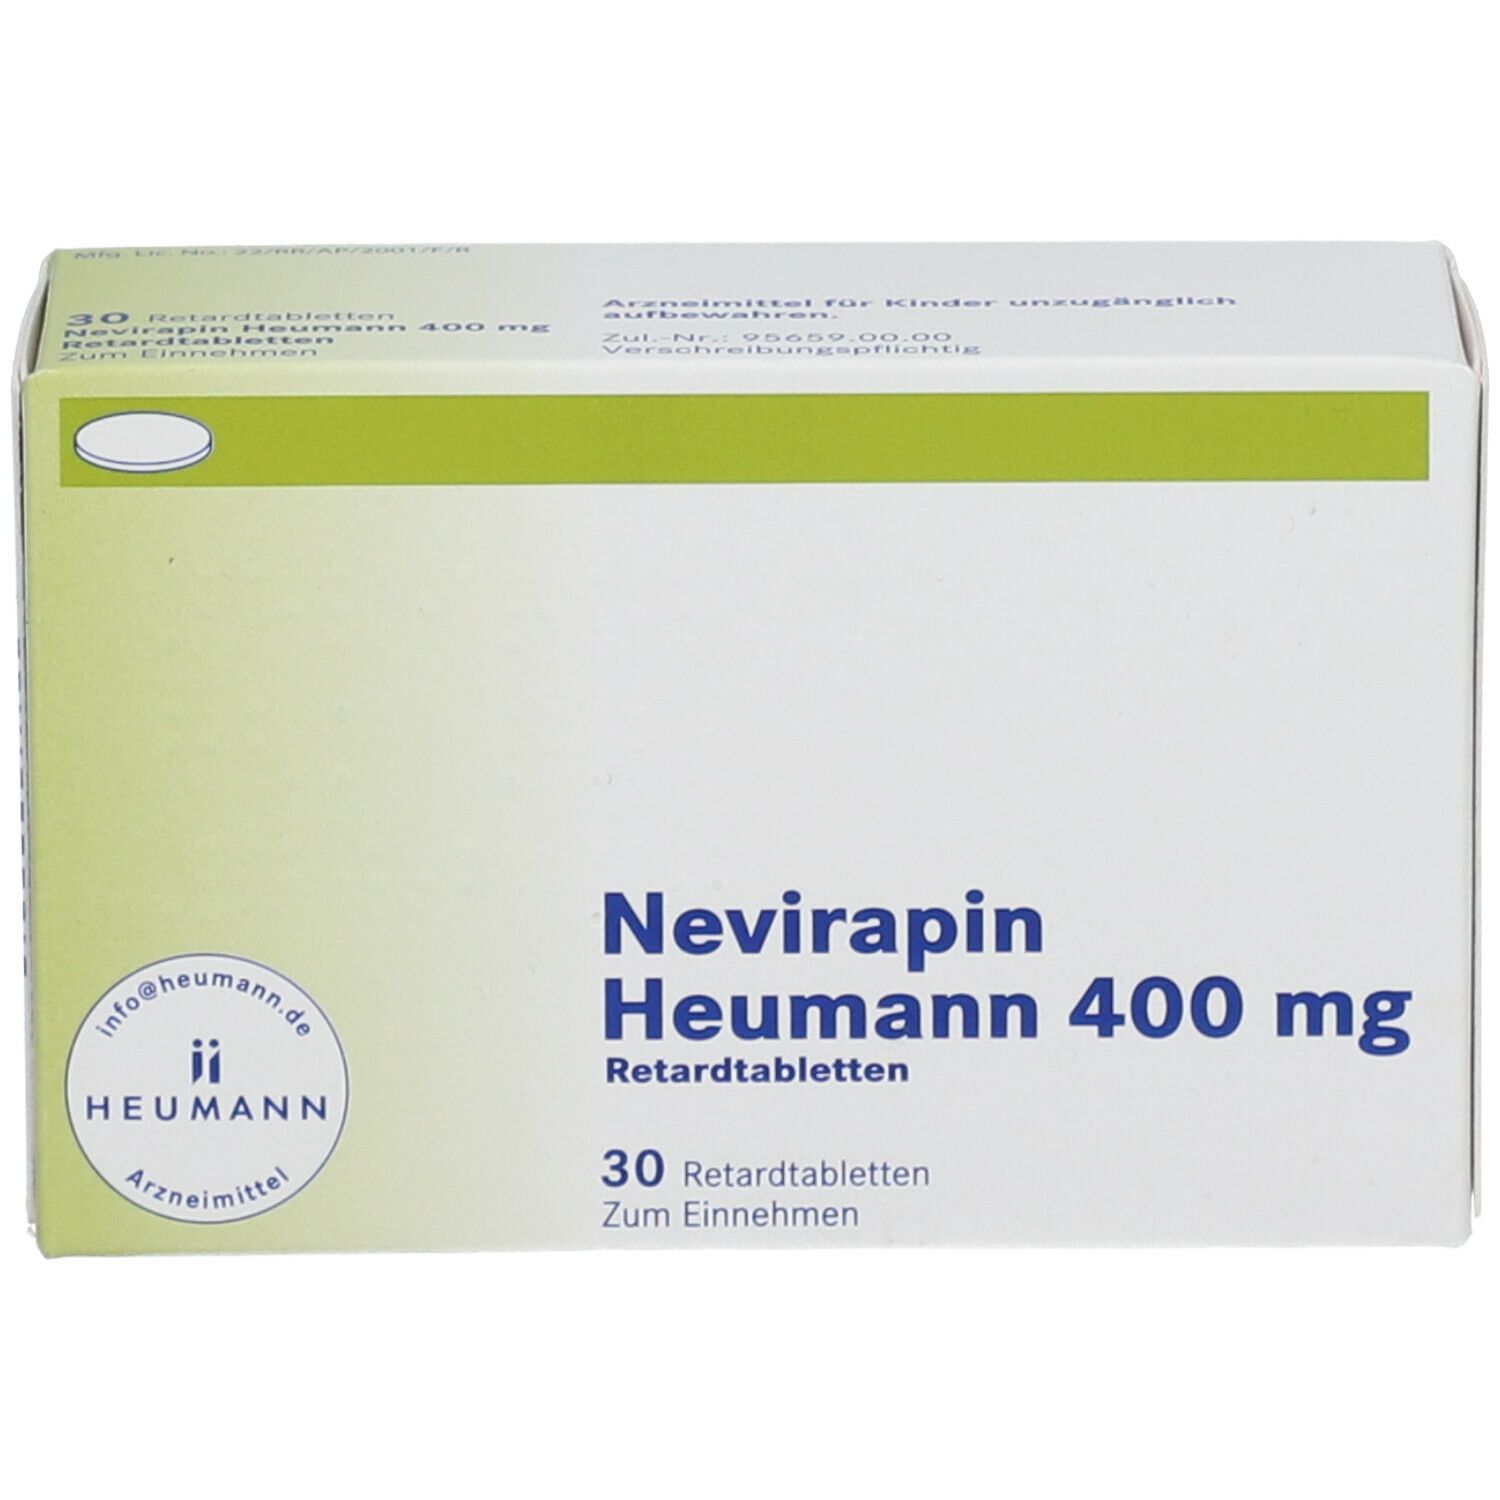 Nevirapin Heumann 400 mg